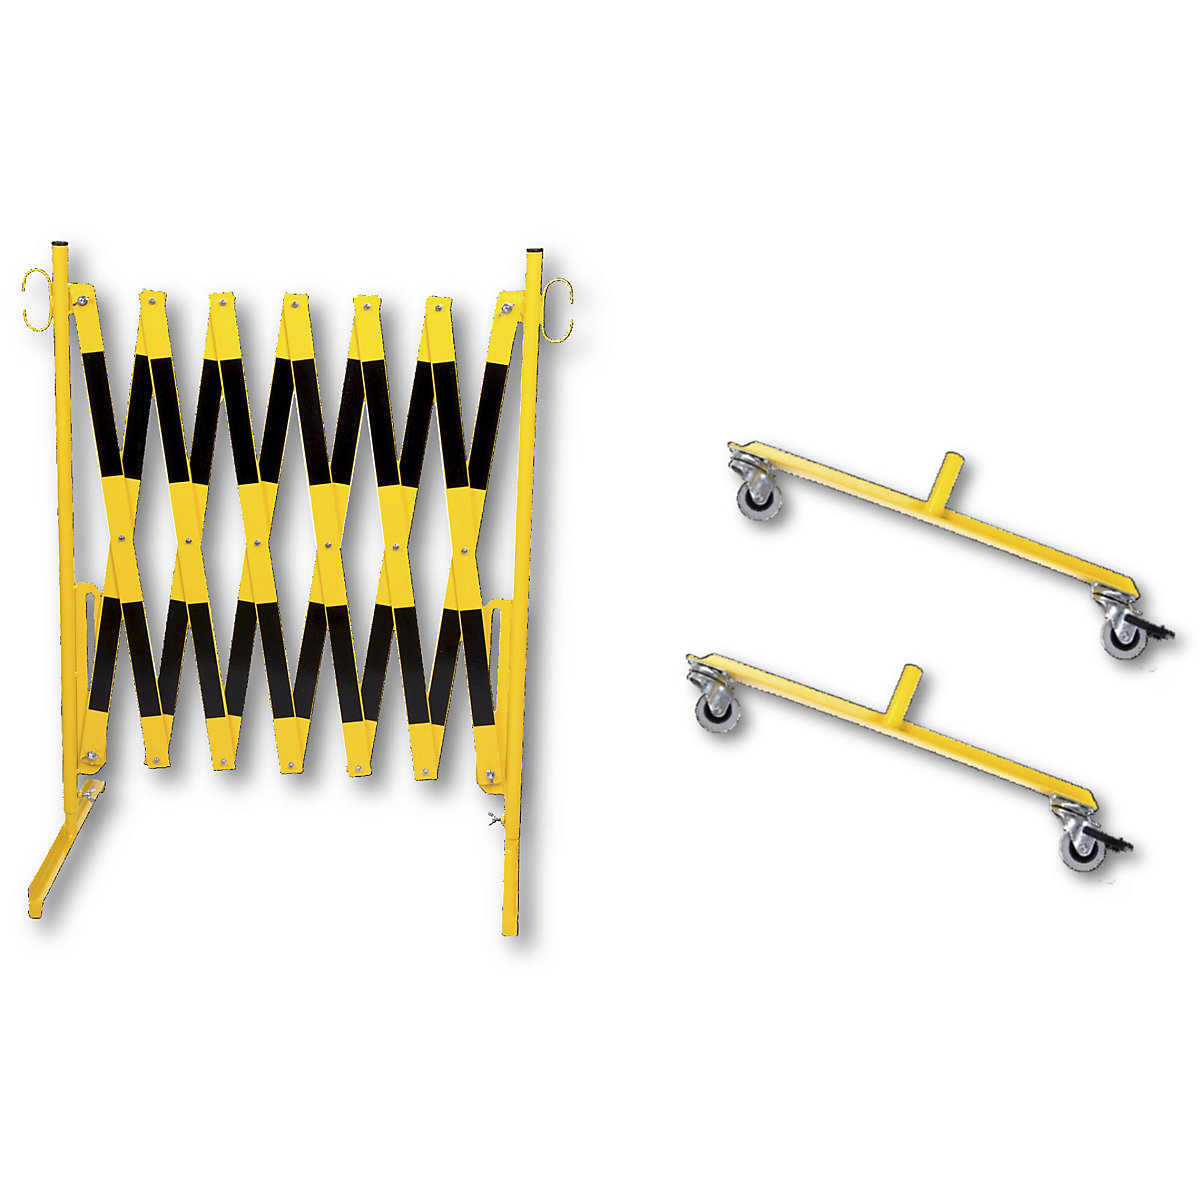 Barrière extensible, avec 2 pieds équipés de roulettes, jaune / noir, longueur max. 3600 mm